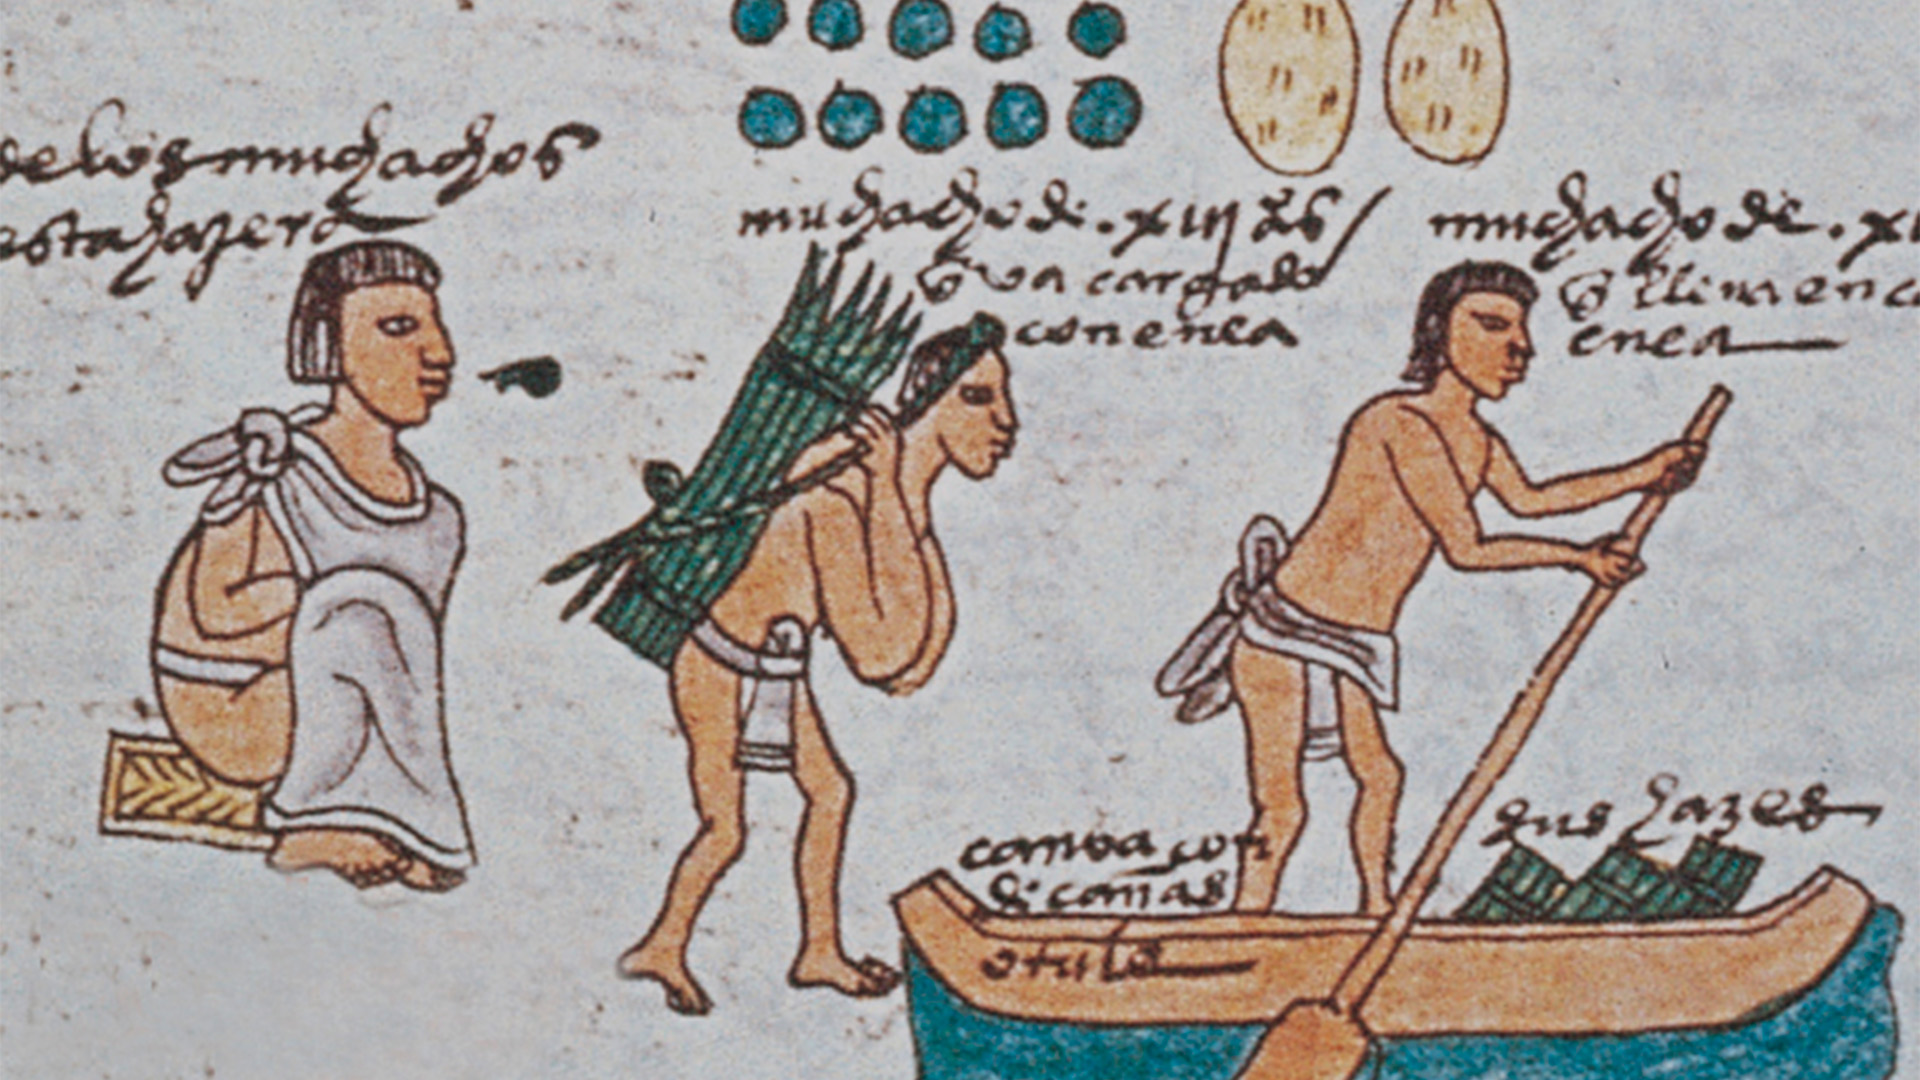 34. Mitos sobre los aztecas. Video